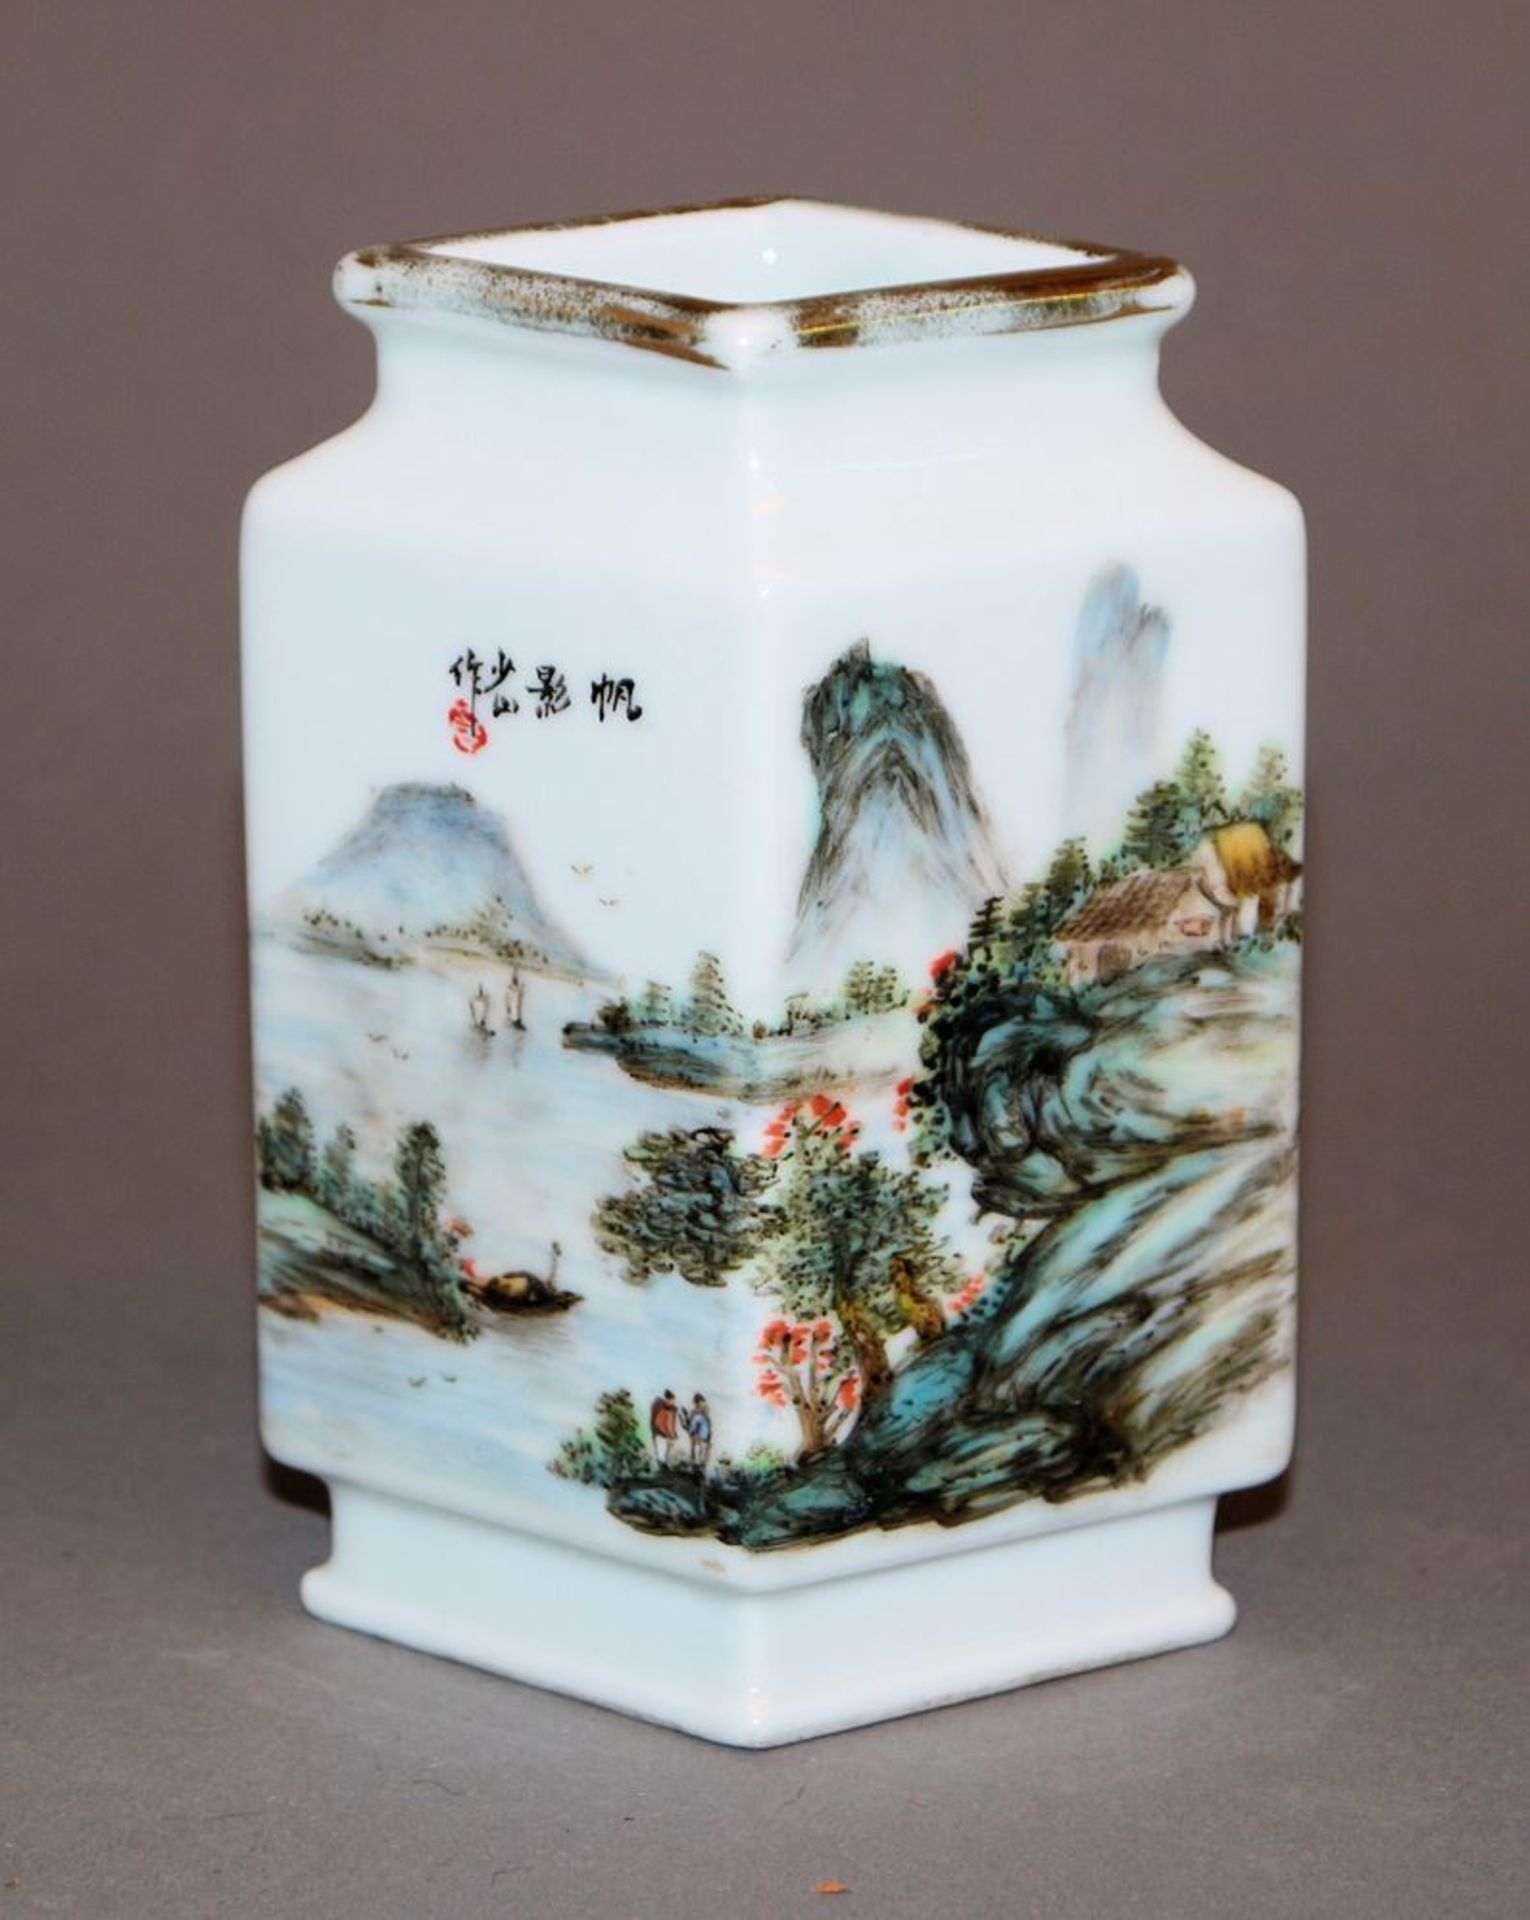 Porzellanvase mit Gemüse und Ideallandschaft, China wohl 1. H. 20. Jh. - Bild 2 aus 3